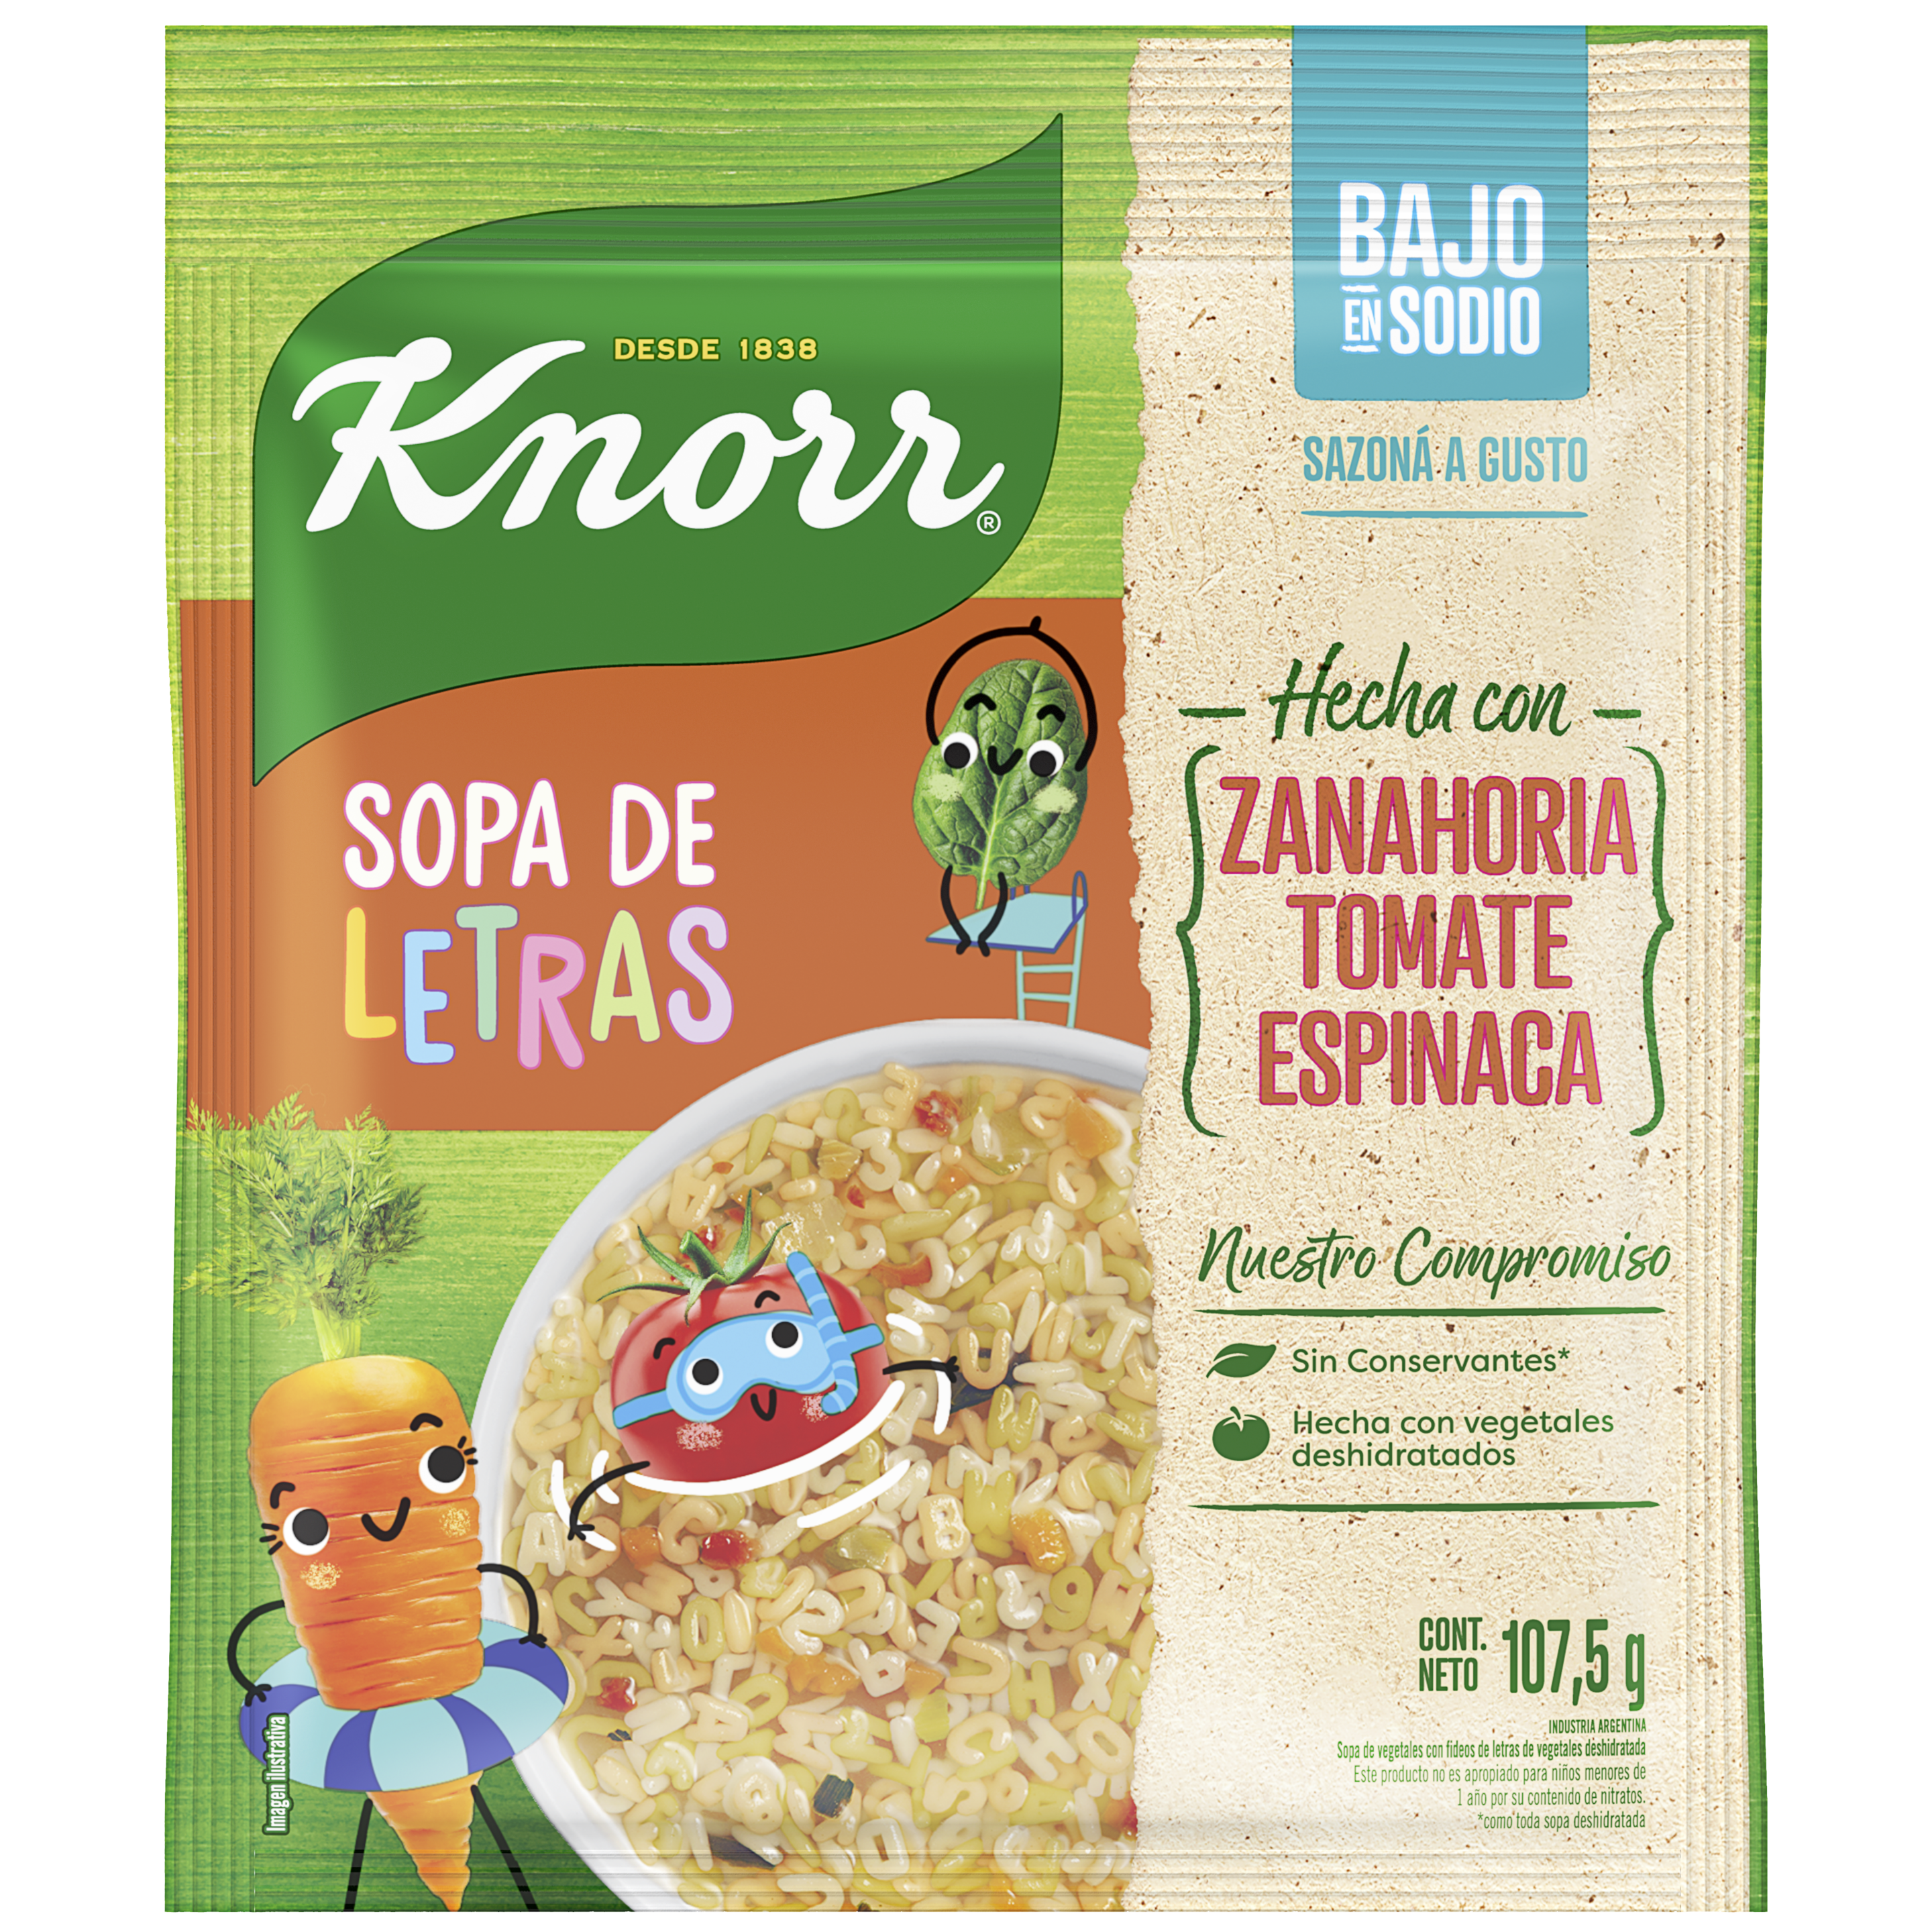 Imagen de envase Sopa de Letras Knorr